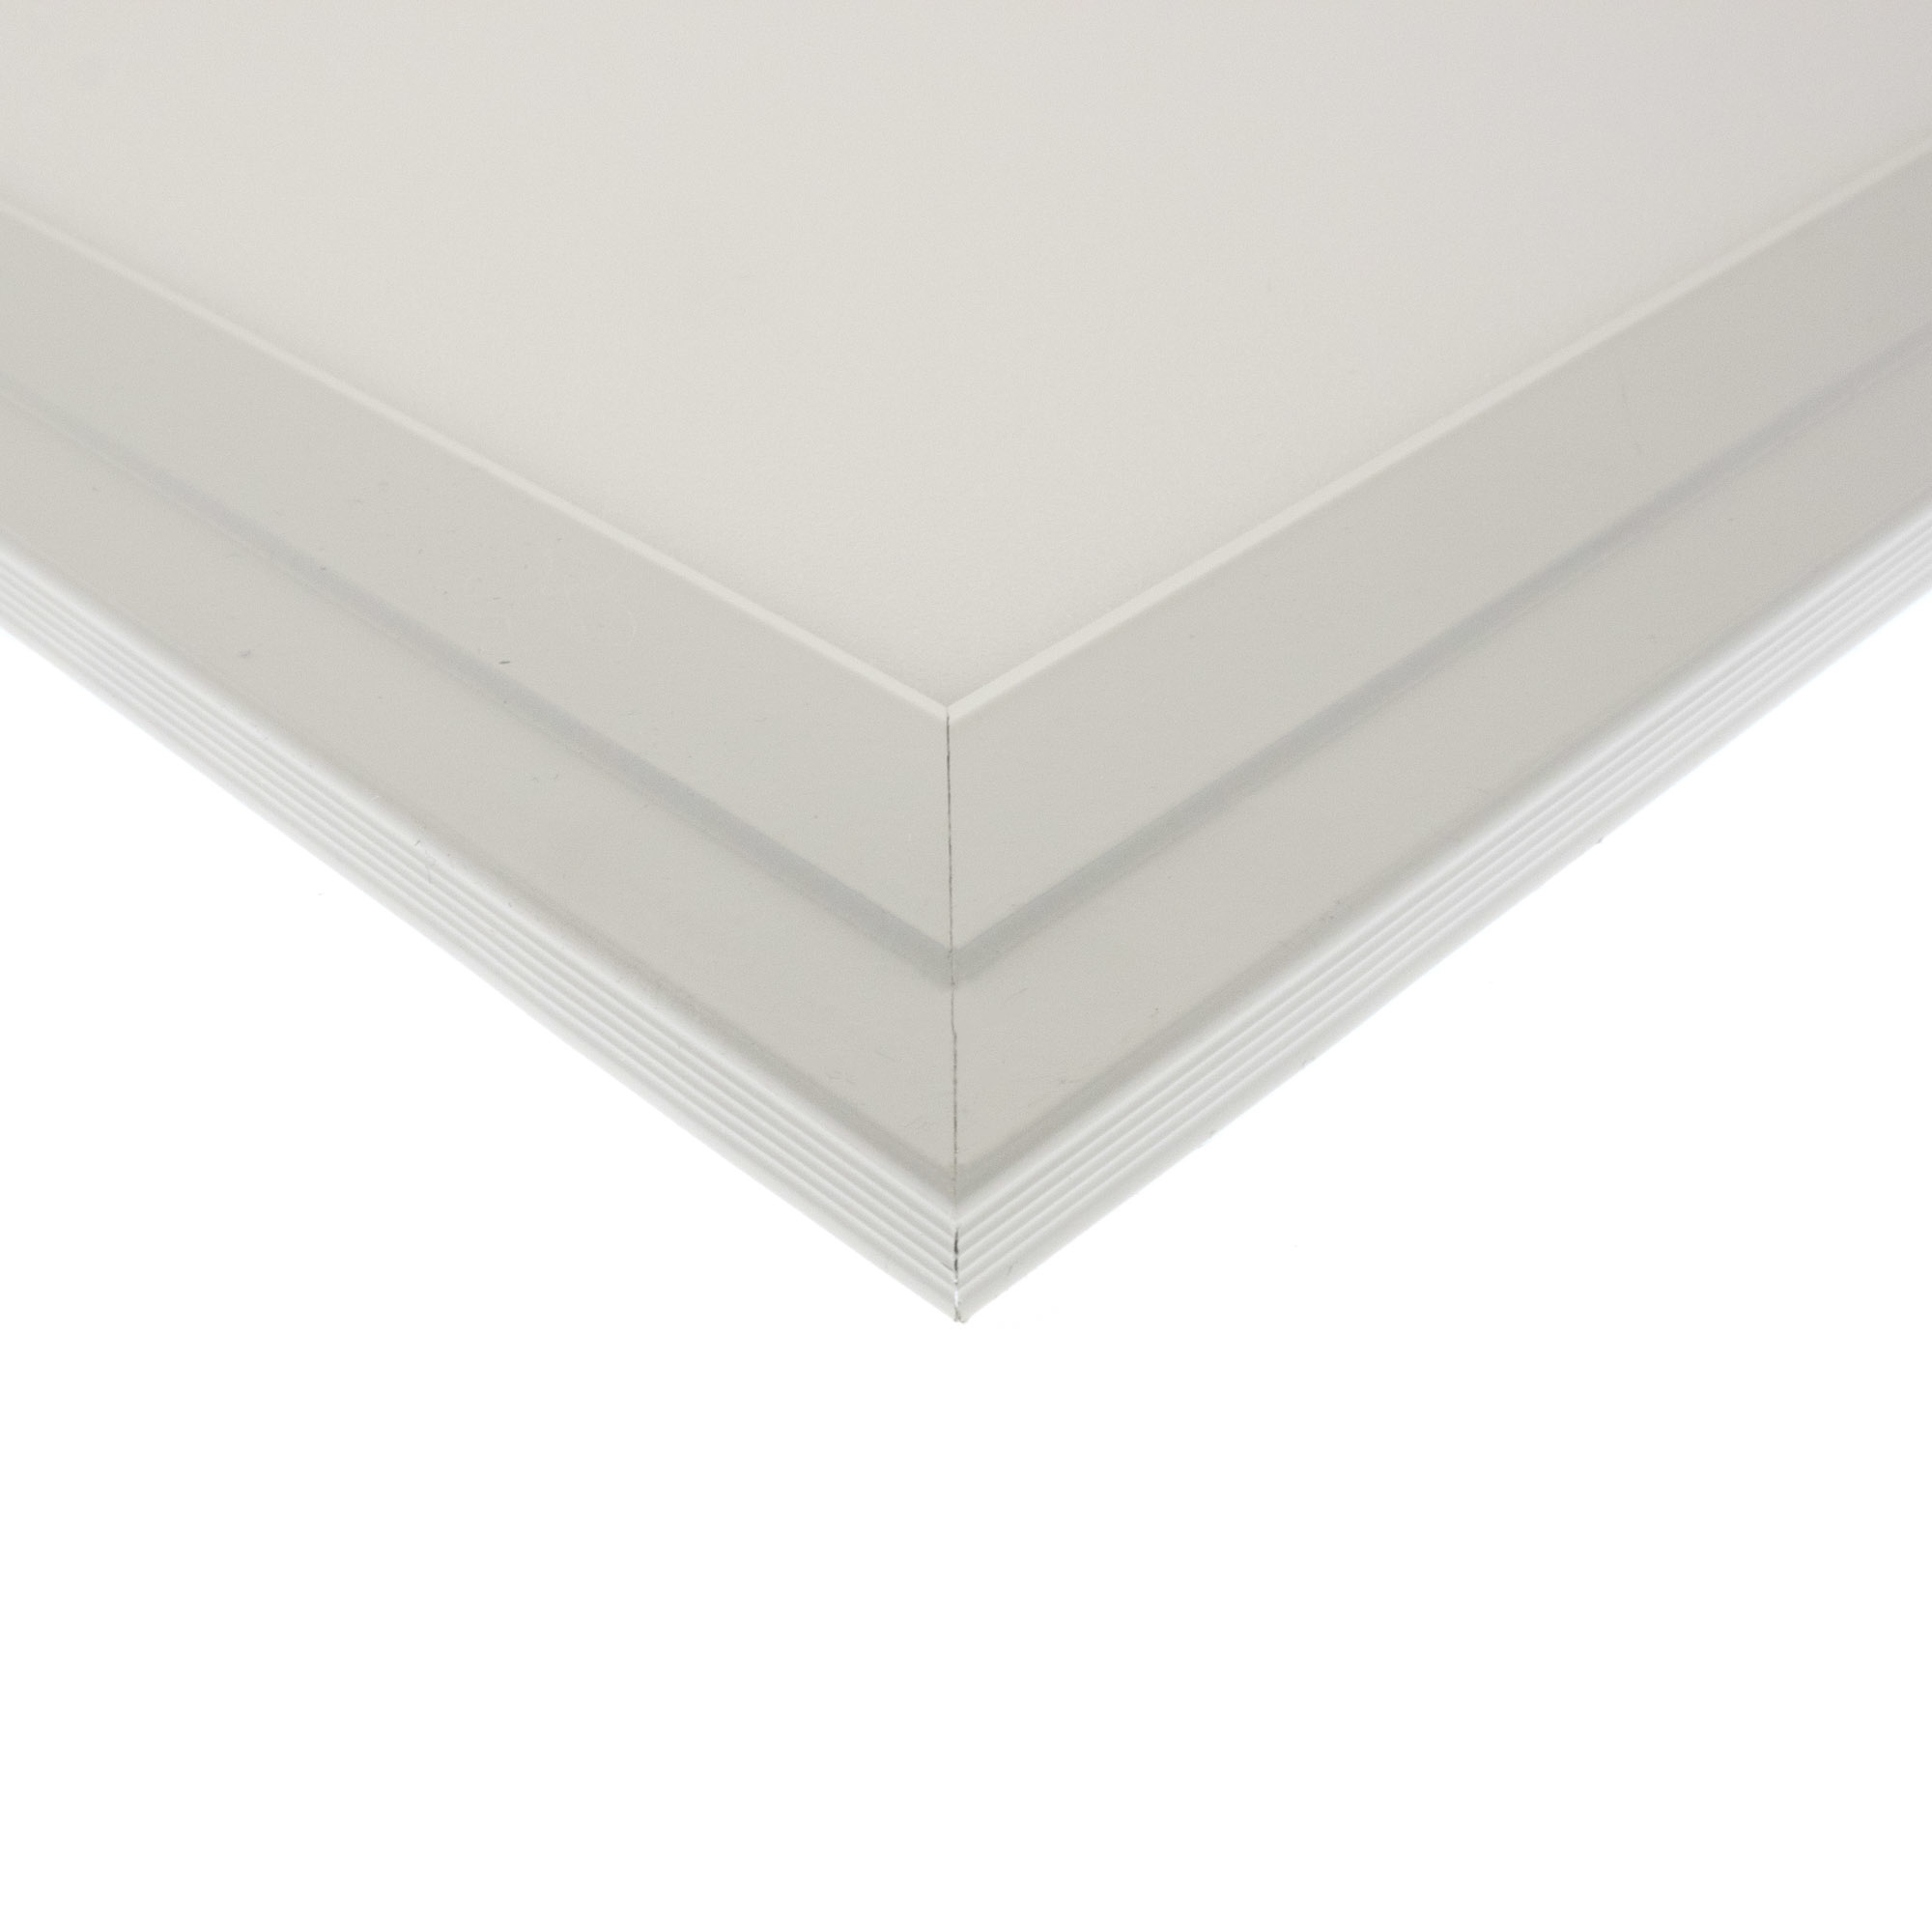 LED-Panel 30x30 18W, warm white, white